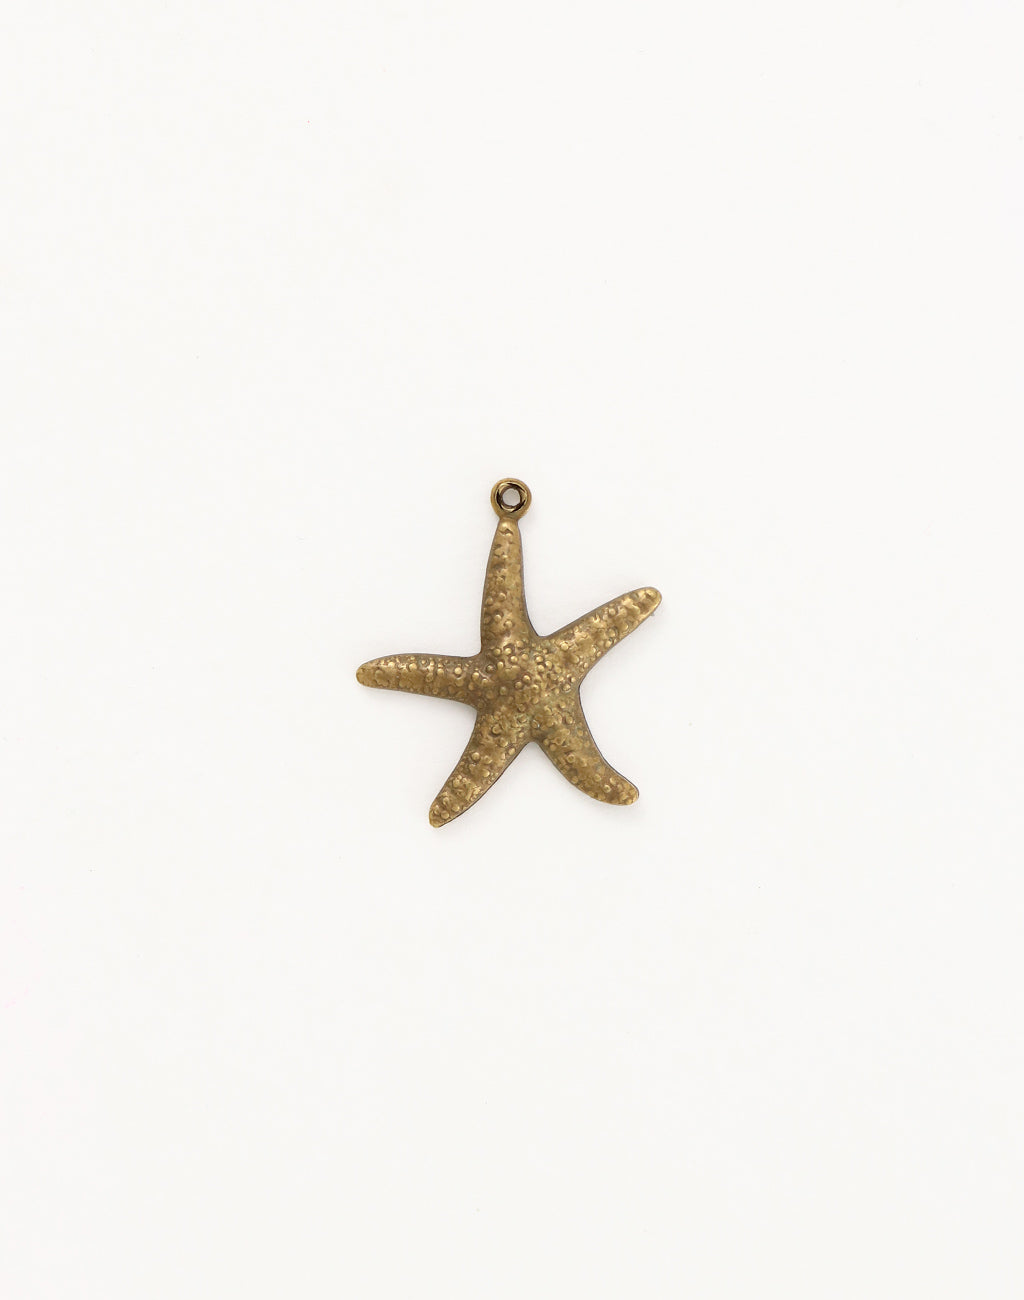 Star Fish Puff, 23x20mm, (1pcs)